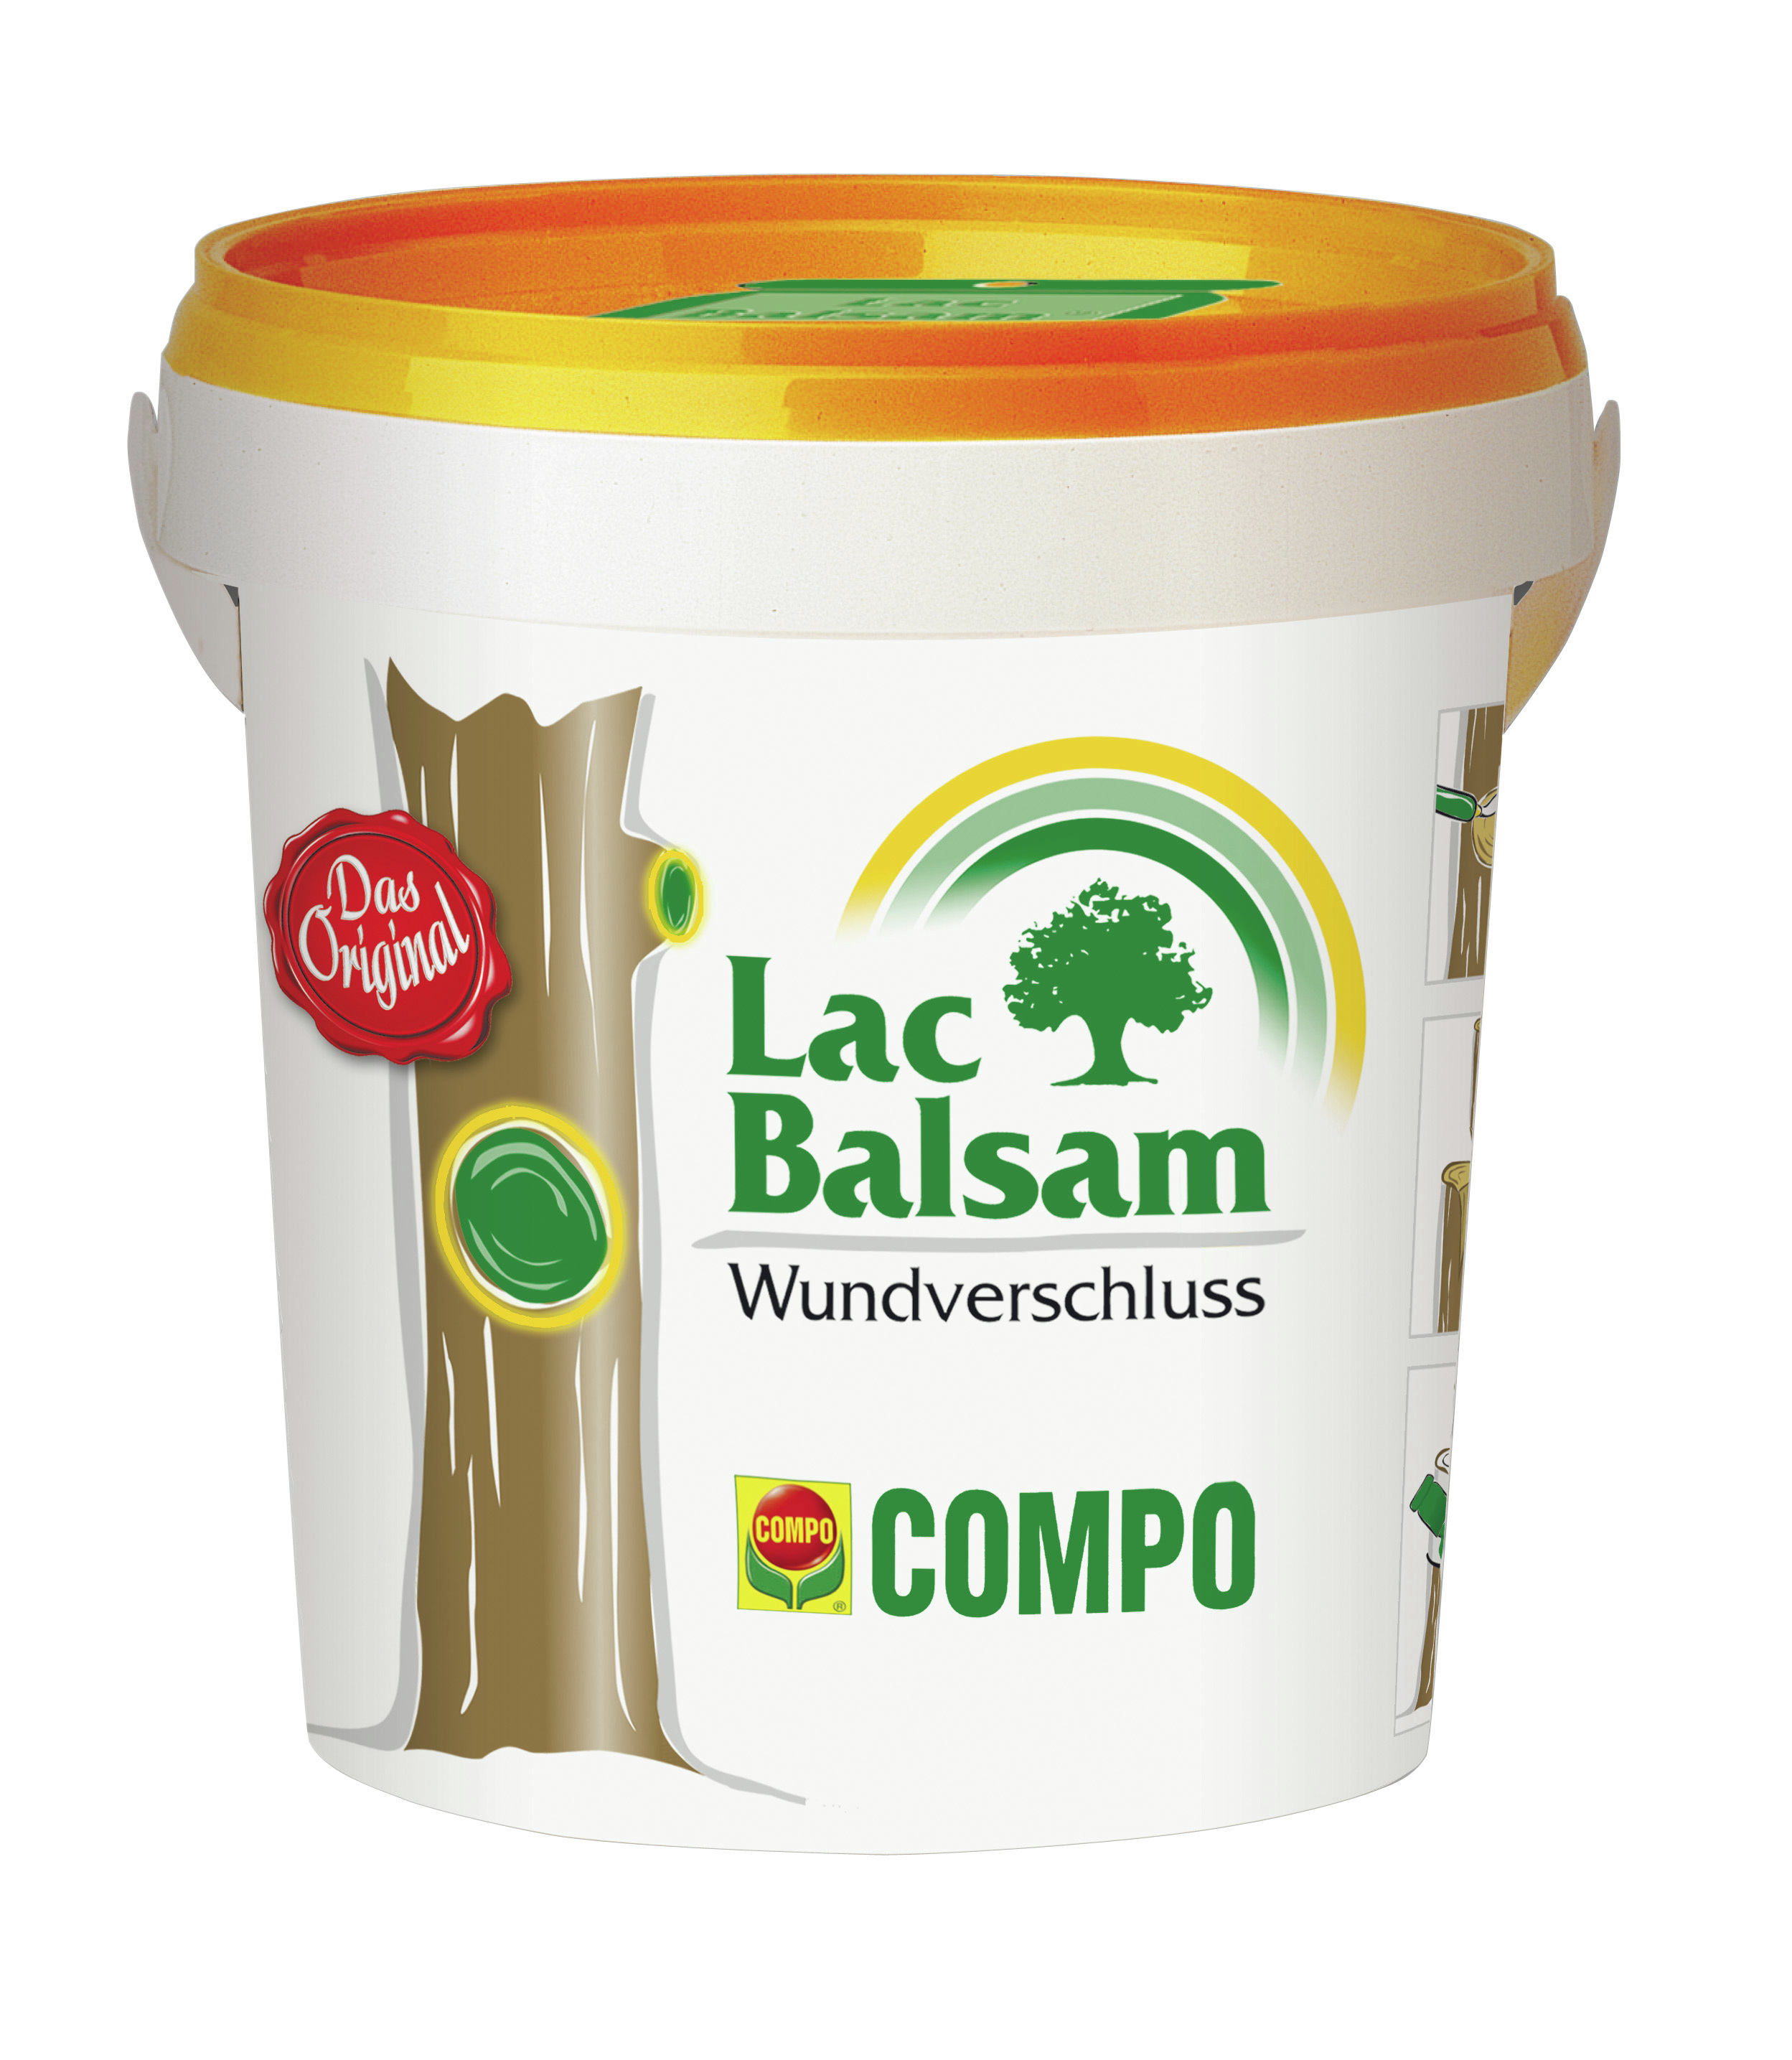 COMPO Lac Balsam 1kg Compo EREG -B3-